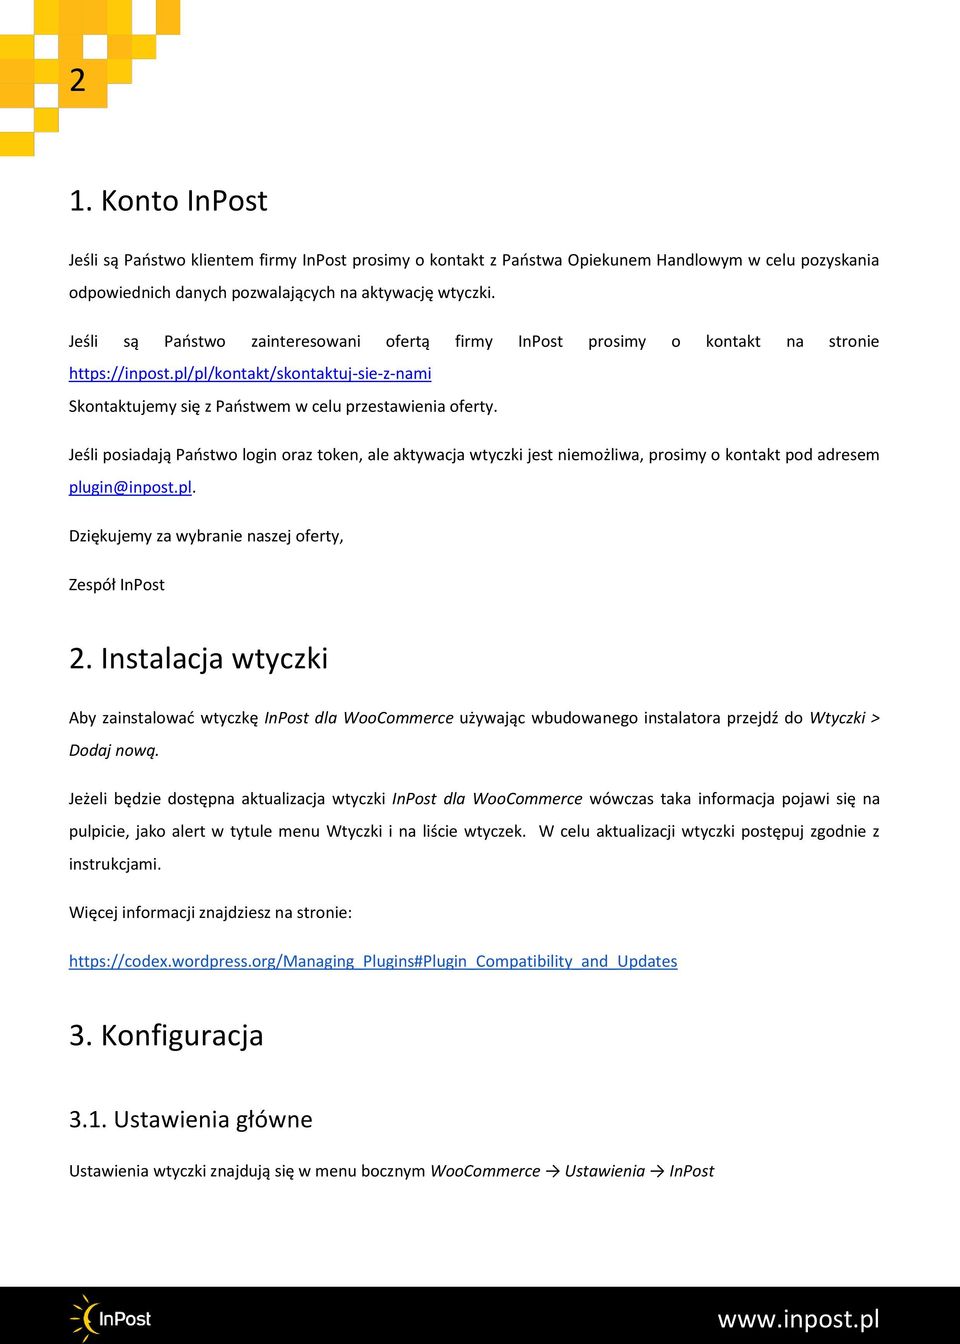 Jeśli posiadają Państwo login oraz token, ale aktywacja wtyczki jest niemożliwa, prosimy o kontakt pod adresem plugin@inpost.pl. Dziękujemy za wybranie naszej oferty, Zespół InPost 2.